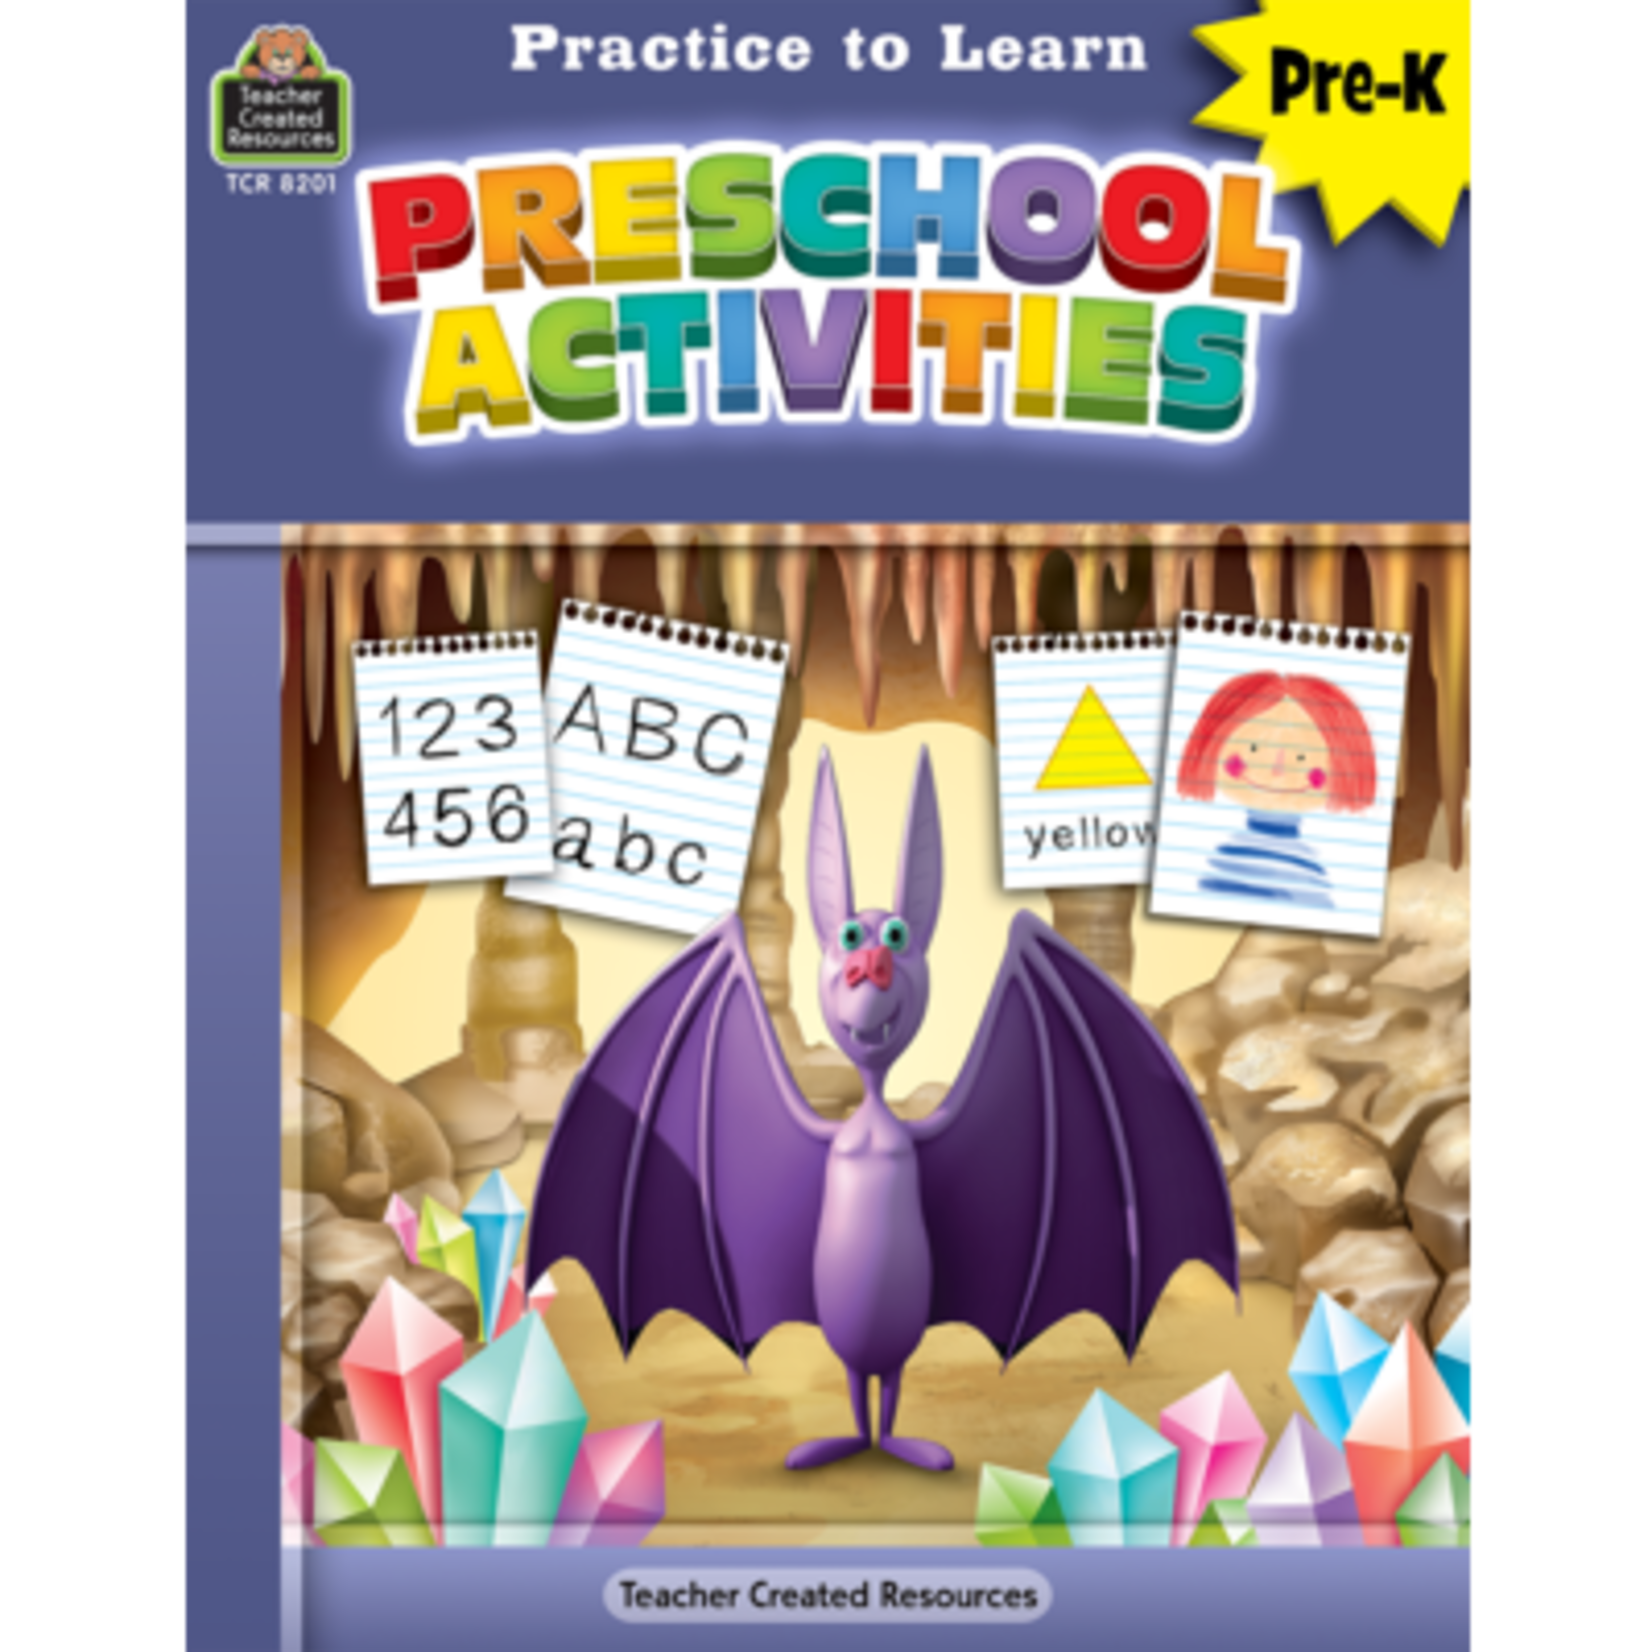 TEACHER CREATED RESOURCES Practice to Learn: Preschool Activities